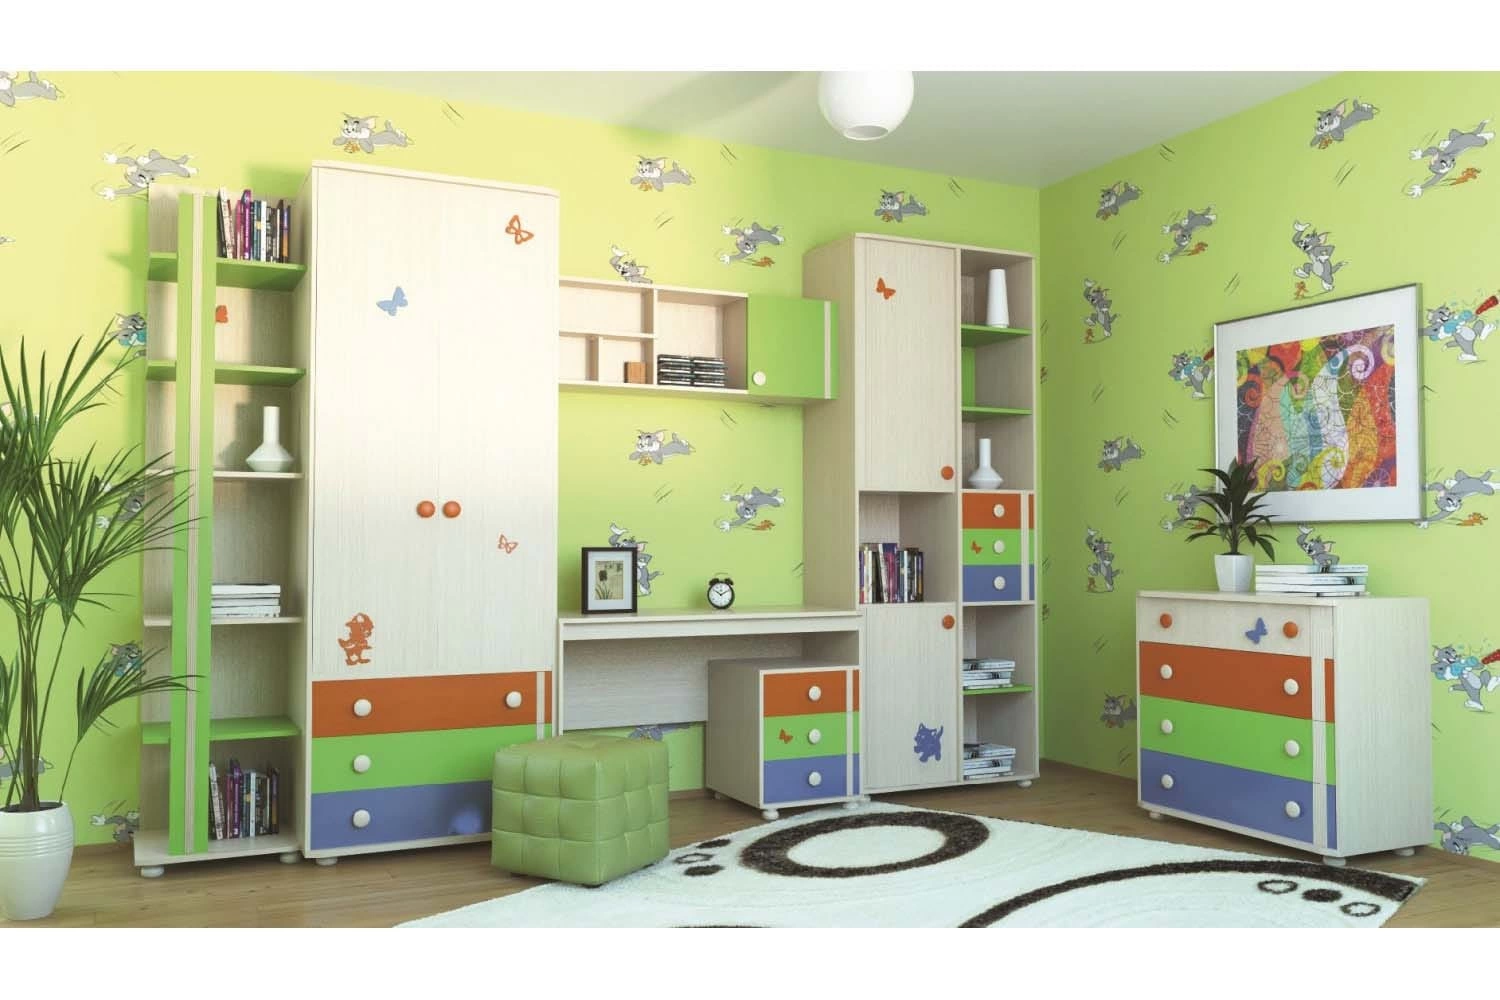 Фабрика мебели мк. Детская мебель фабрики Корвет. Шкаф для детской комнаты. Красивая мебель в детскую комнату. Стенка для детской комнаты.